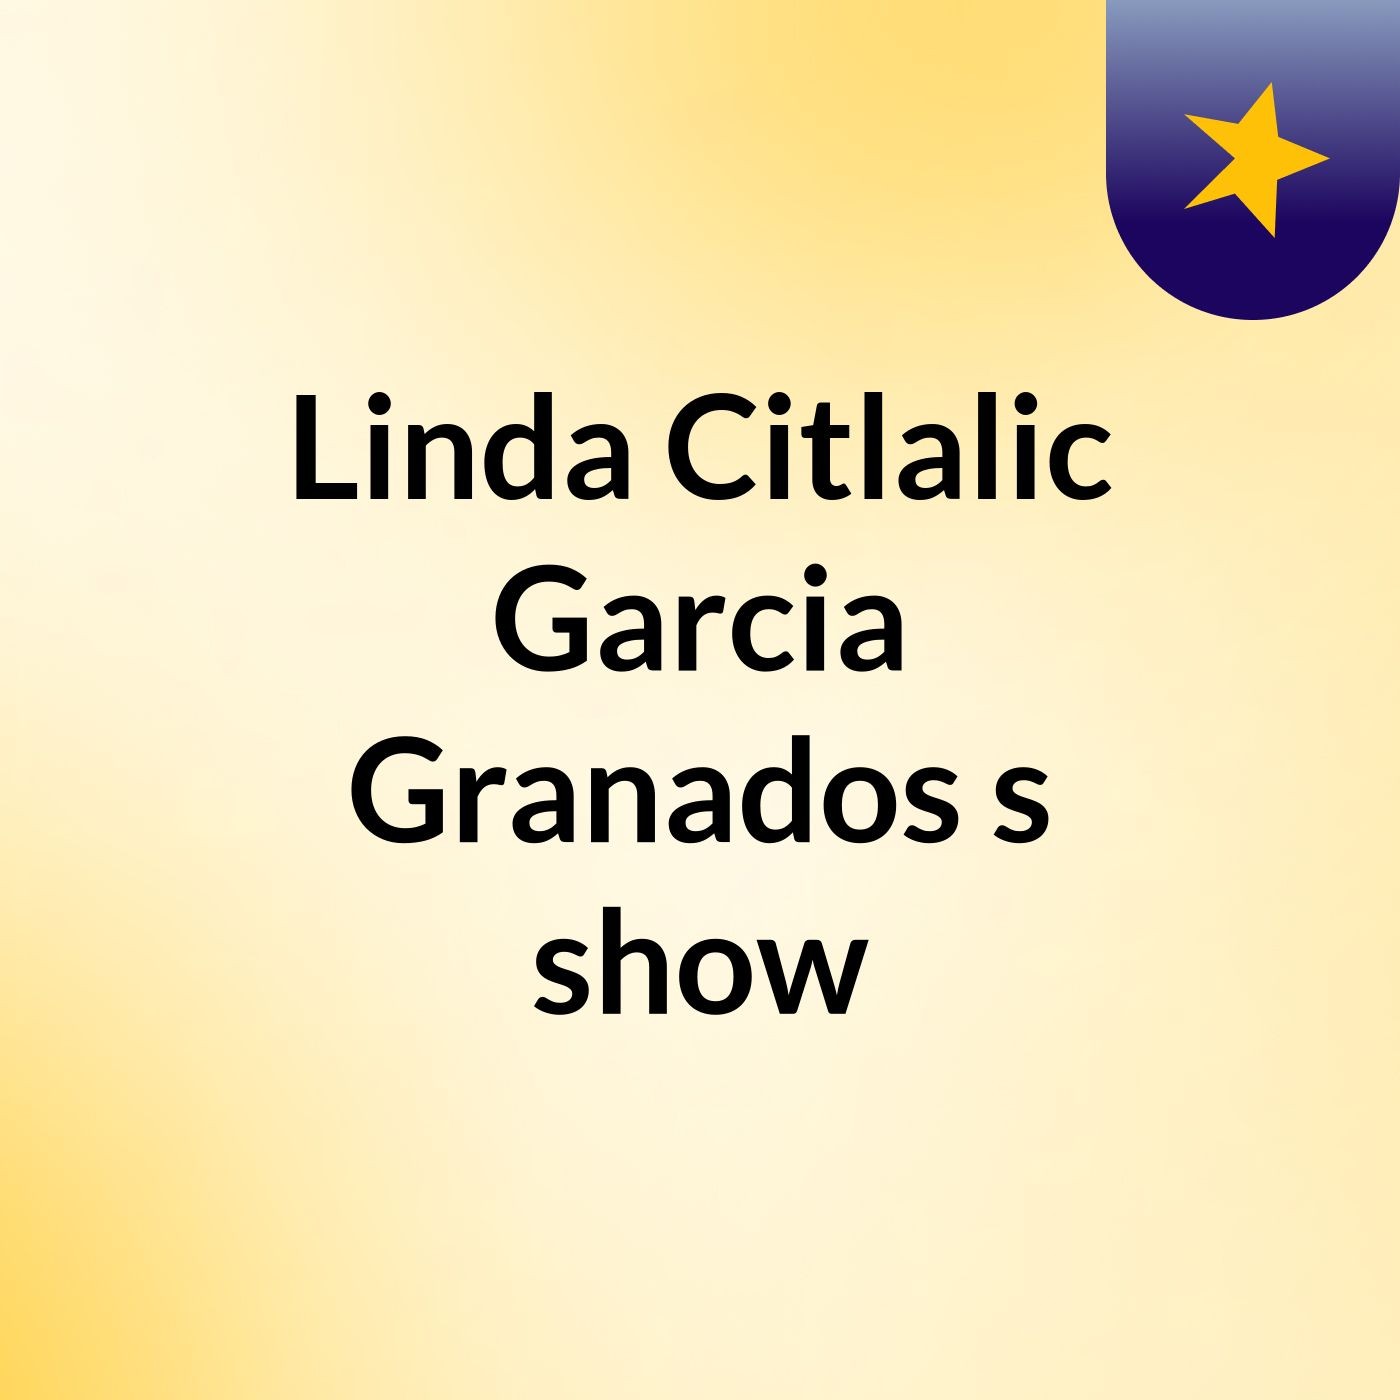 Linda Citlalic Garcia Granados's show